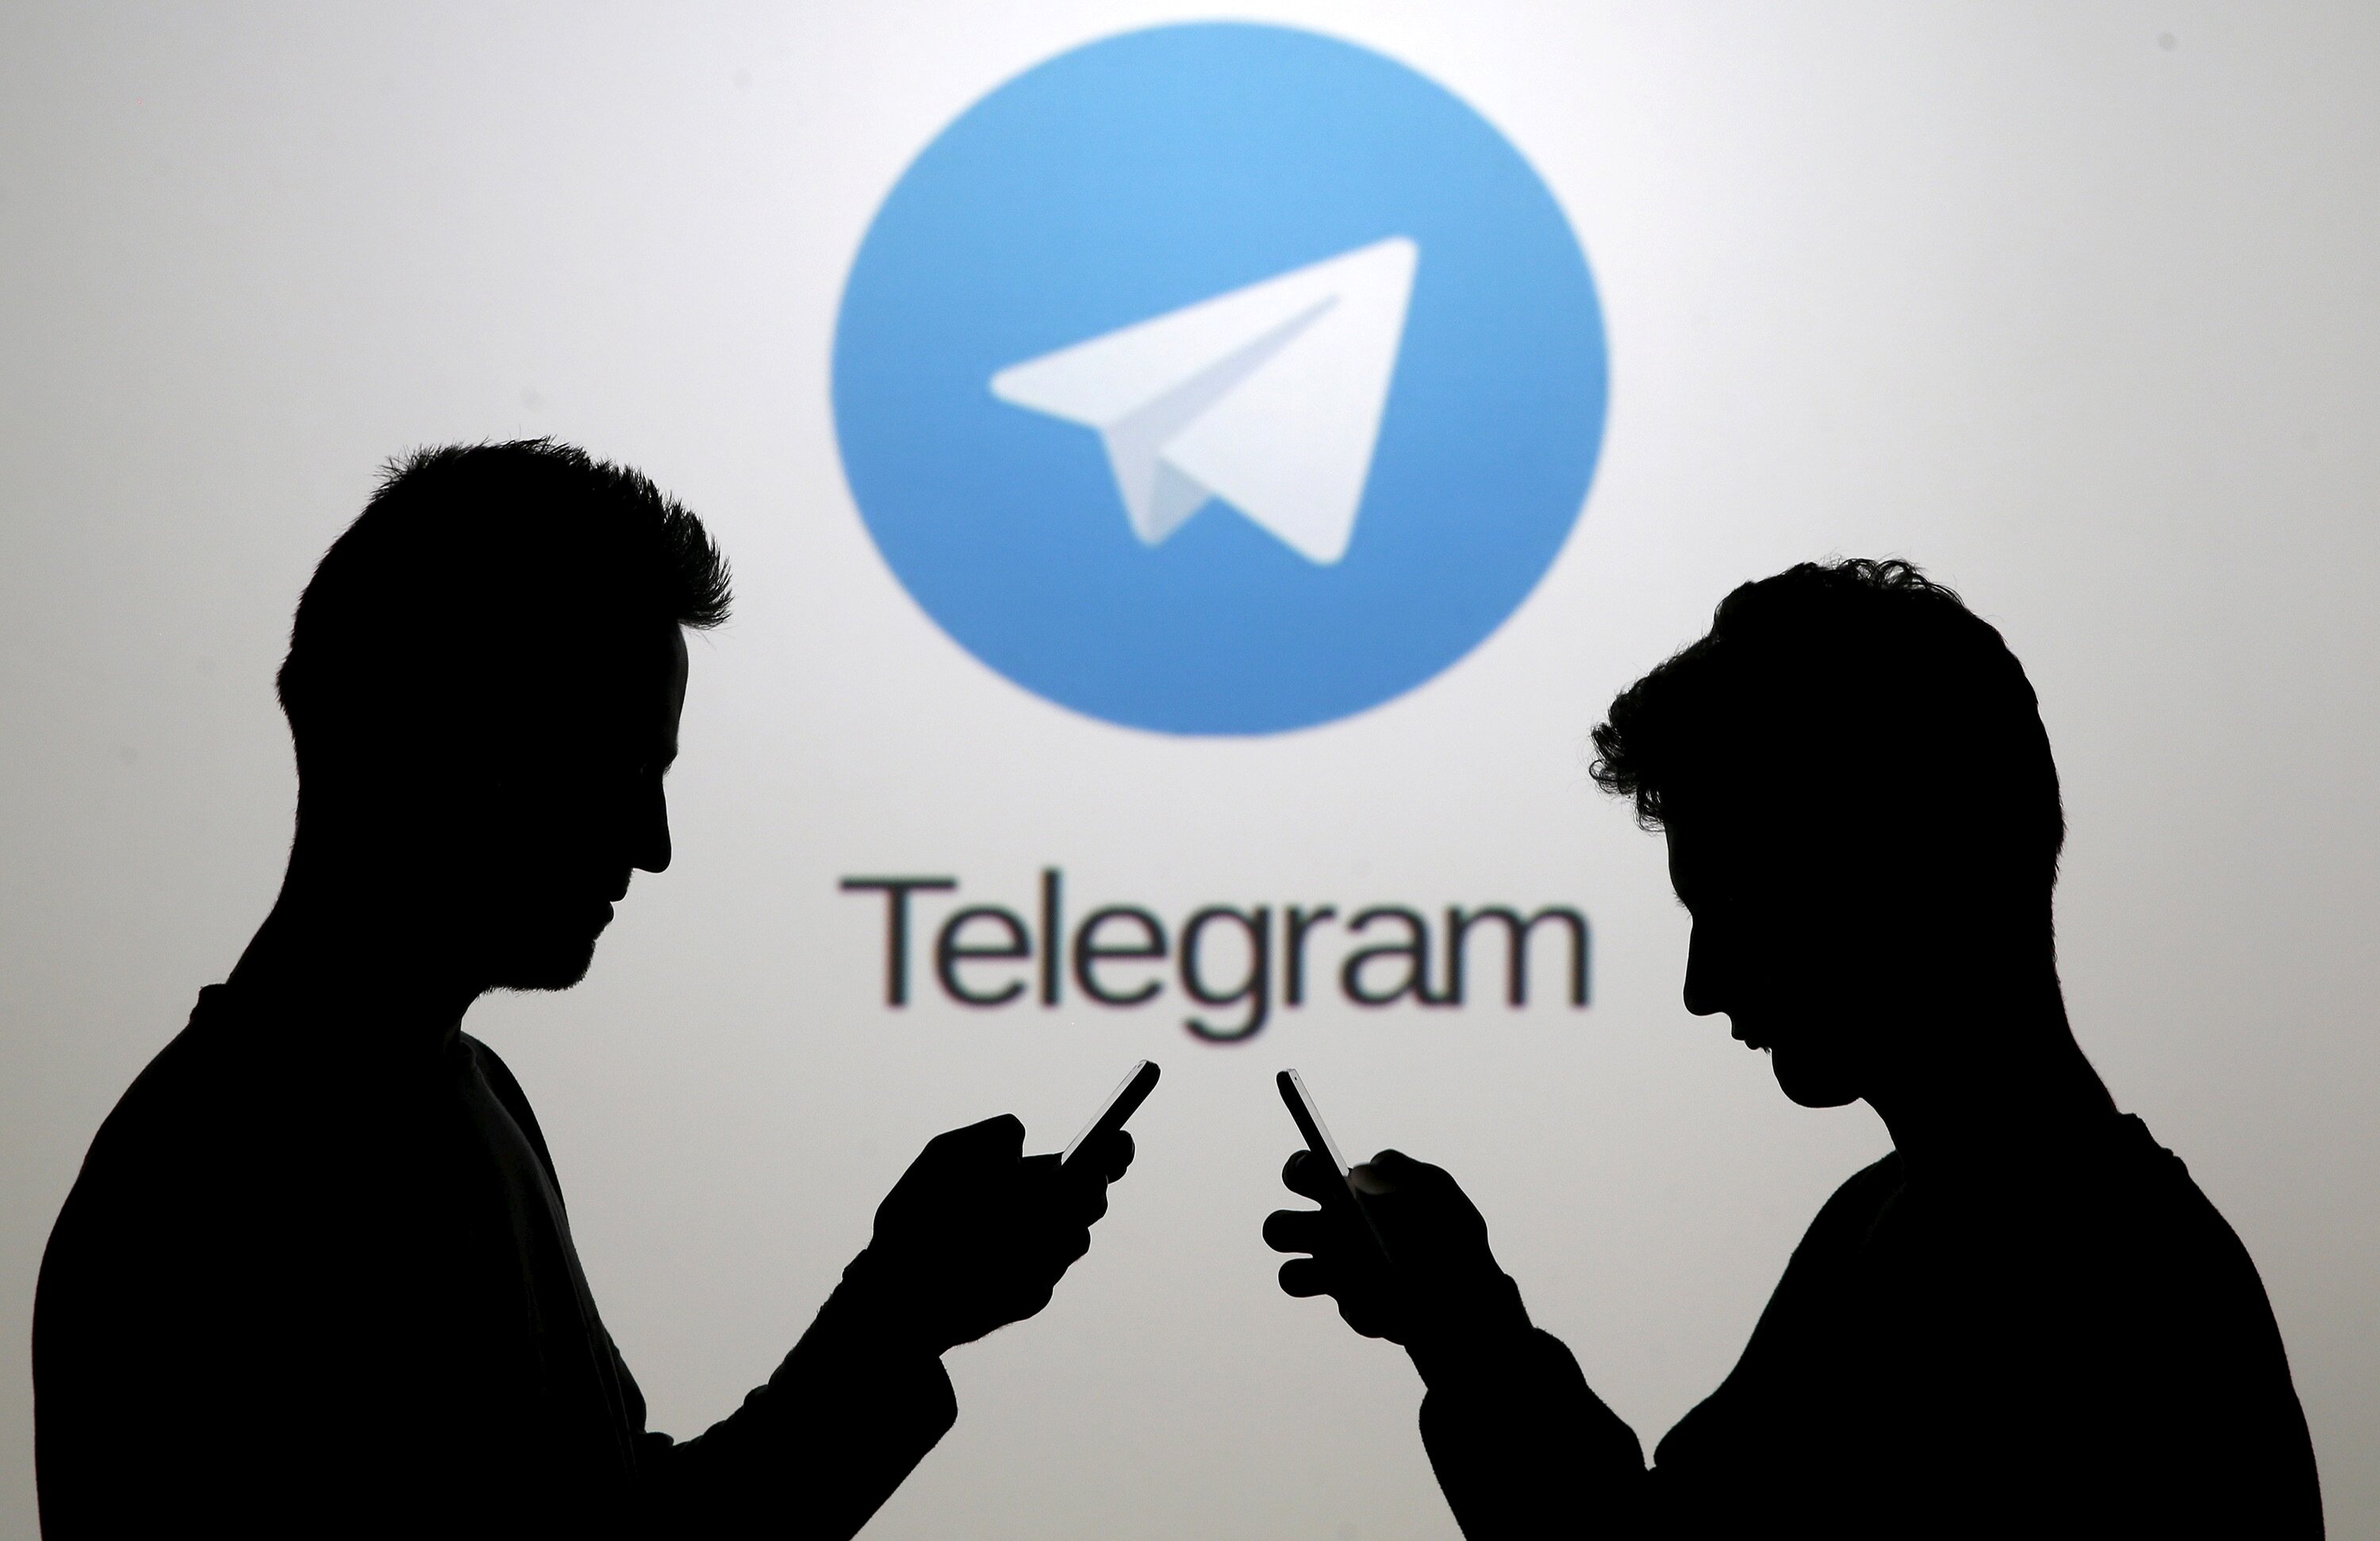 Дуров поведал о причинах сбоя в работе Telegram - подробности